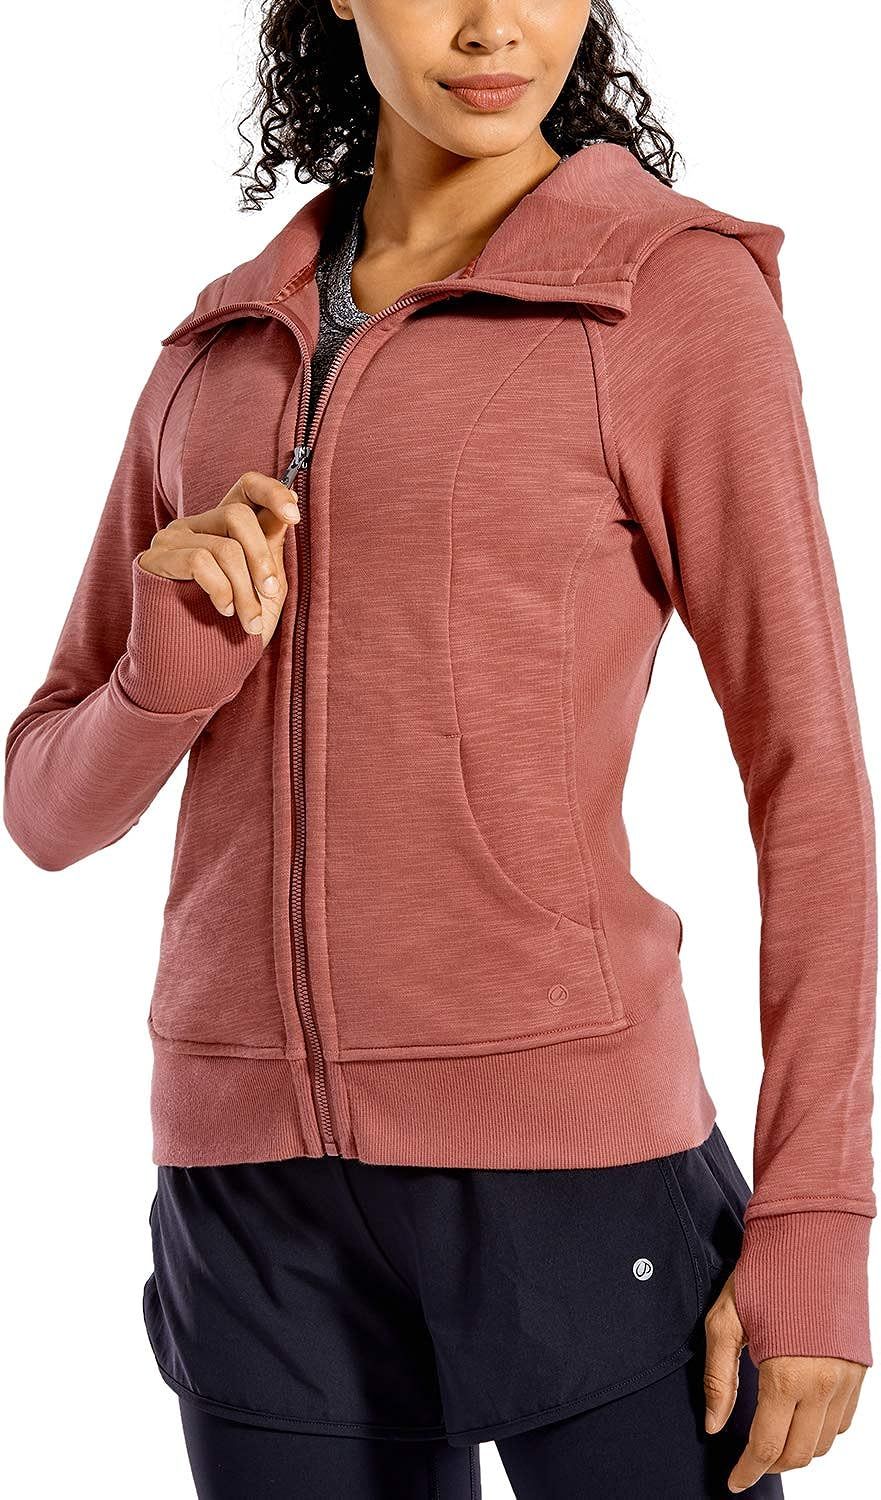 CRZ YOGA Women's Cotton Hoodies Full Zip Running Track Jacket Sweatshirt with Thumbholes | Amazon (US)